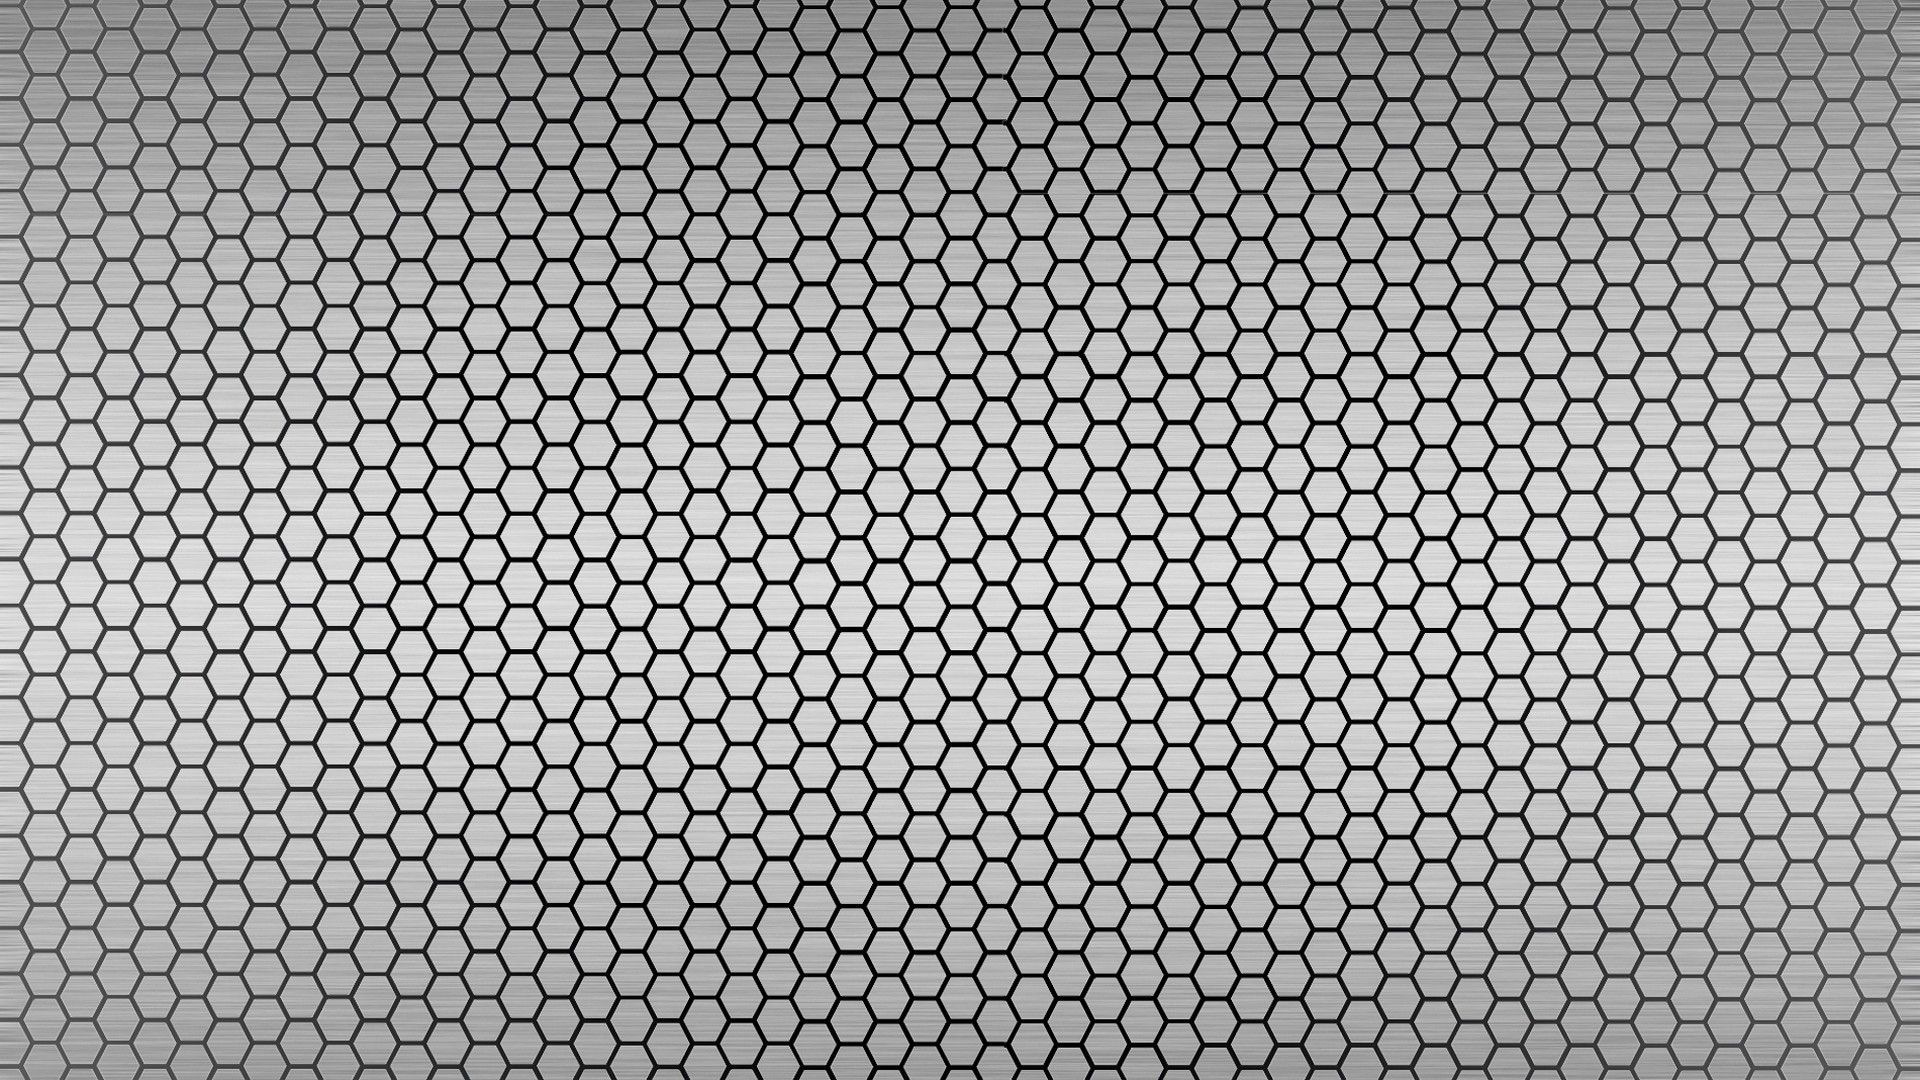 Free download metallic hexagon 1920x1080 wallpaper Best